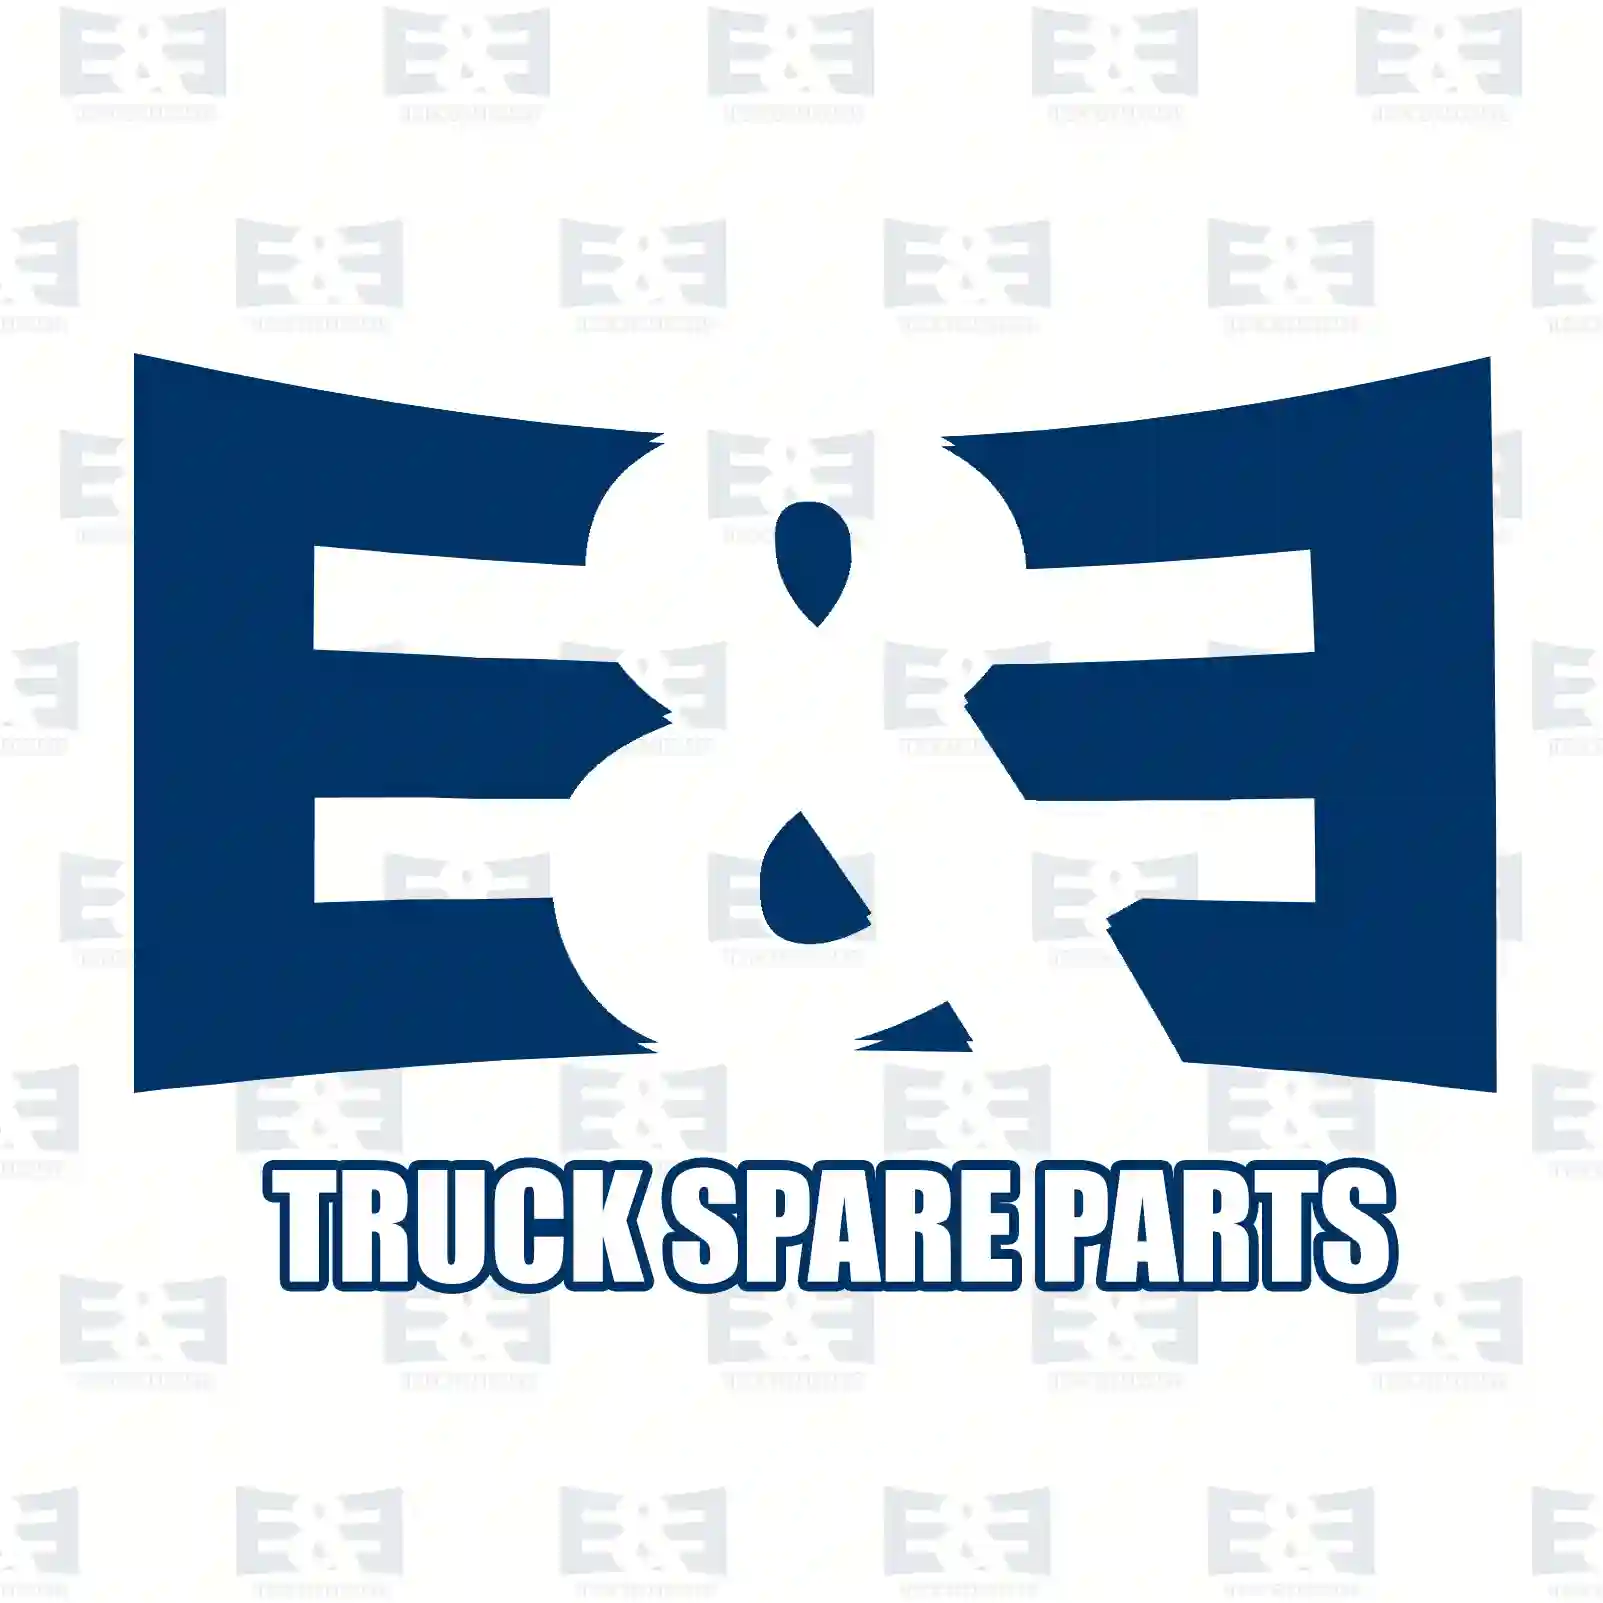 Radiator, aluminium, 2E2203040, 10570444, 10570458, 10570459, 1321887, 1321888, 1570458, 1570459, 310082, 321888, 334842, 371625, 570444, 570451, 570458, 570459, ZG00476-0008 ||  2E2203040 E&E Truck Spare Parts | Truck Spare Parts, Auotomotive Spare Parts Radiator, aluminium, 2E2203040, 10570444, 10570458, 10570459, 1321887, 1321888, 1570458, 1570459, 310082, 321888, 334842, 371625, 570444, 570451, 570458, 570459, ZG00476-0008 ||  2E2203040 E&E Truck Spare Parts | Truck Spare Parts, Auotomotive Spare Parts